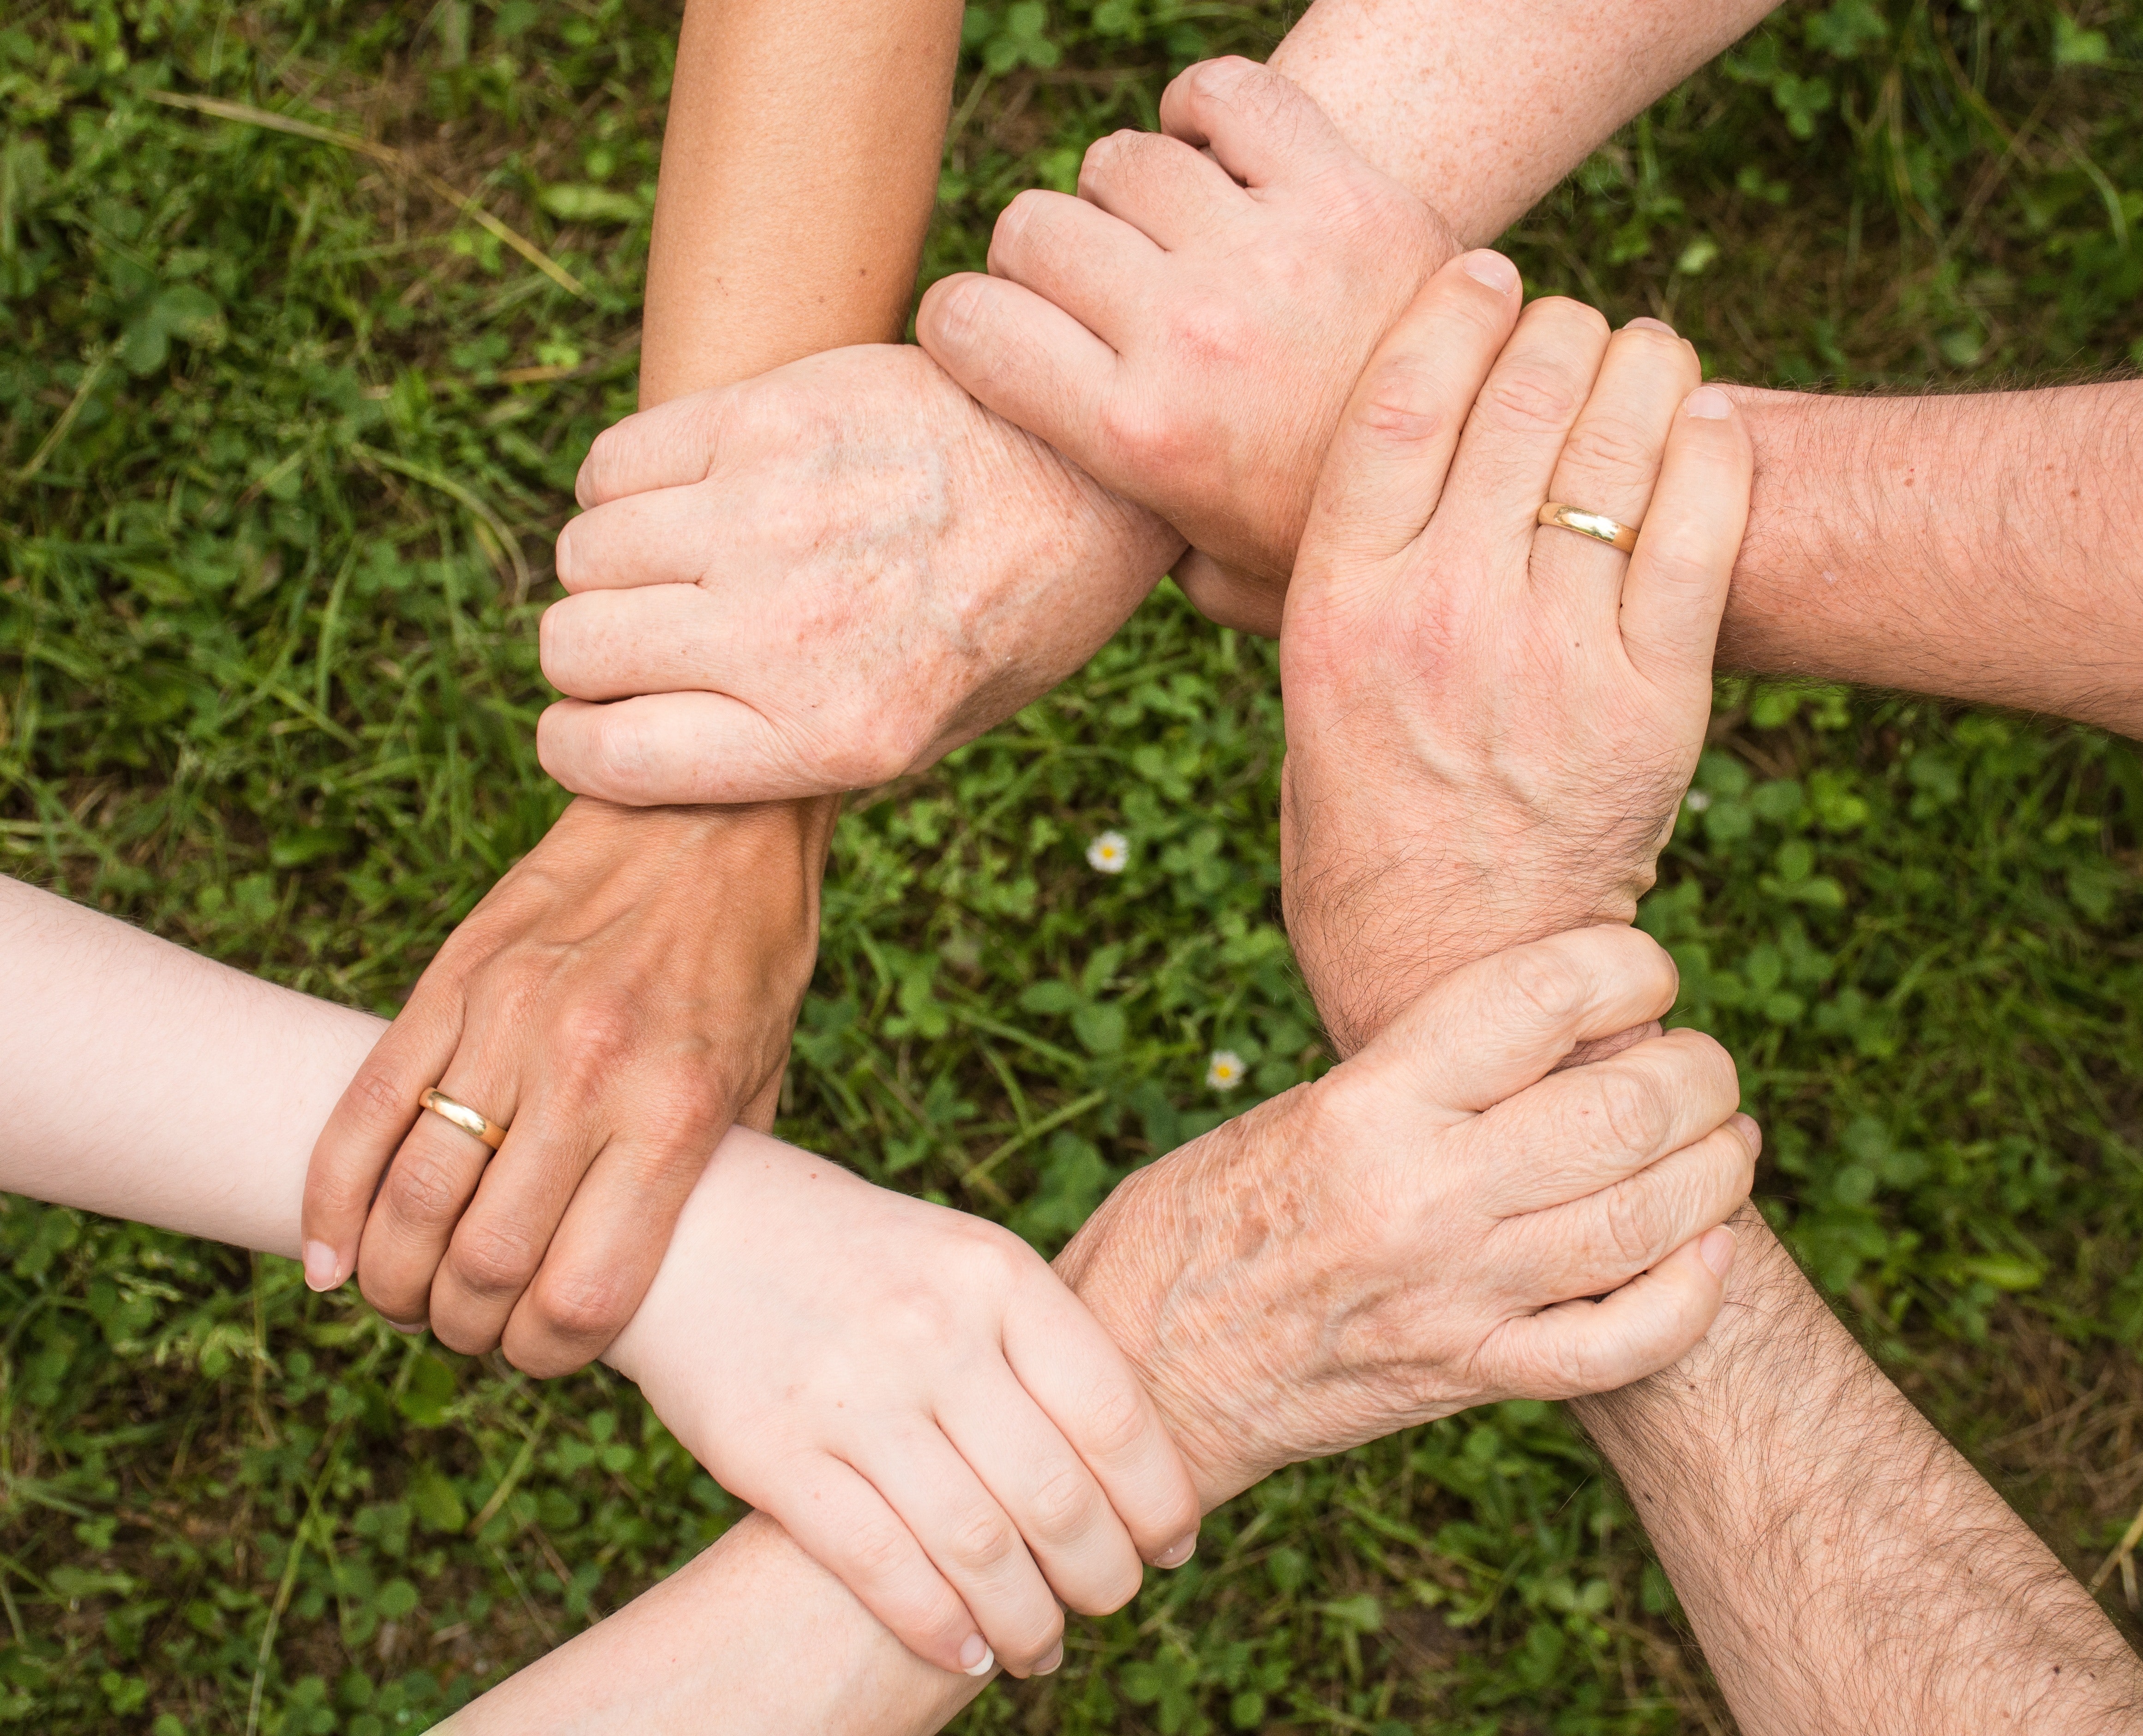 Personen halten ihre Hände aufeinander um Gemeinschaft zu symbolisieren.